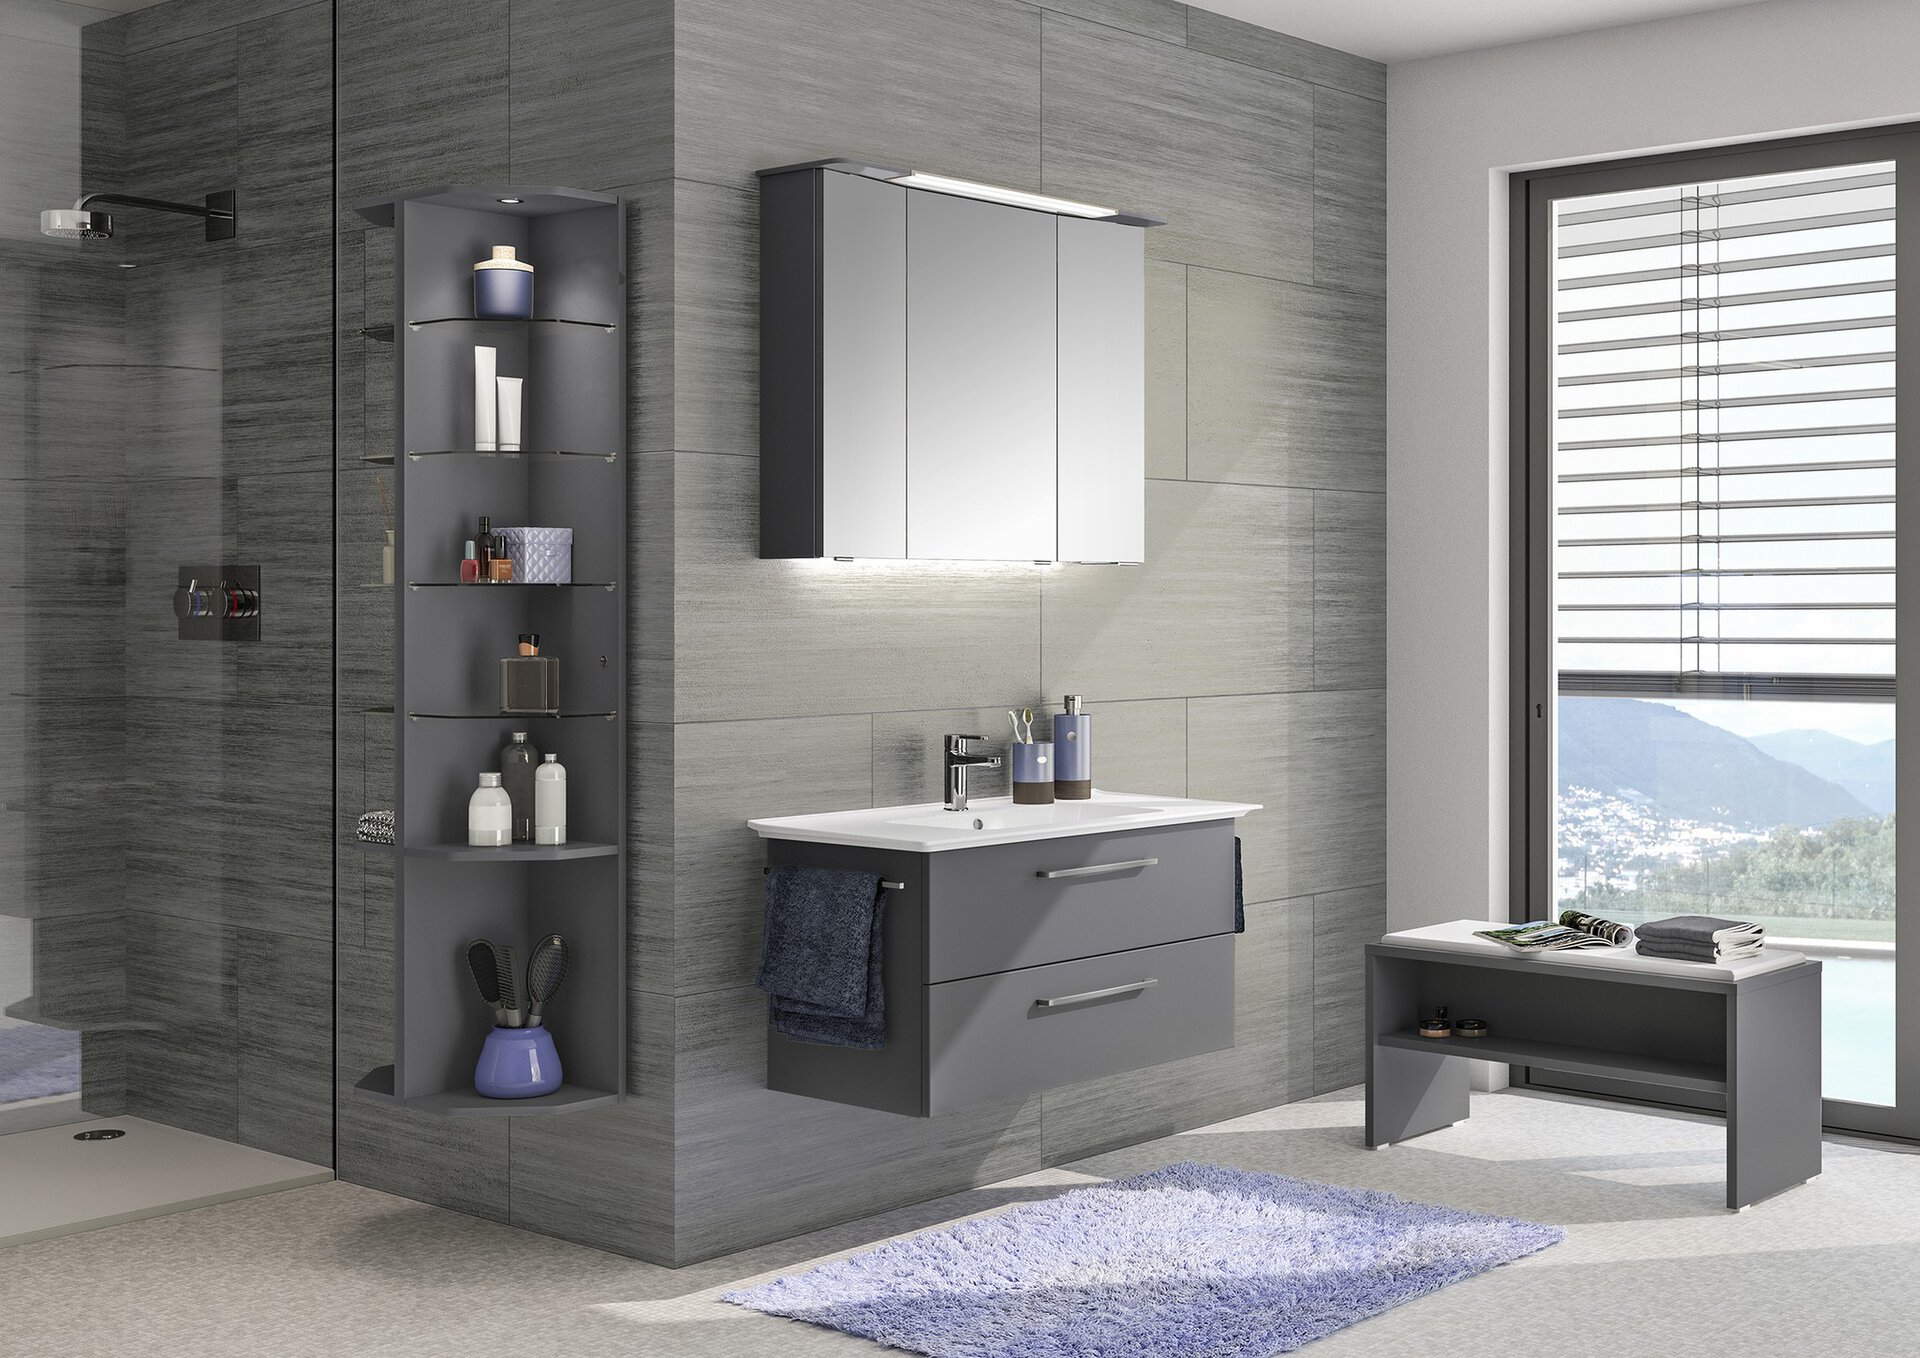 Beispiel für ein Bad in schwarz weiß, mit anthrazit Möbeln